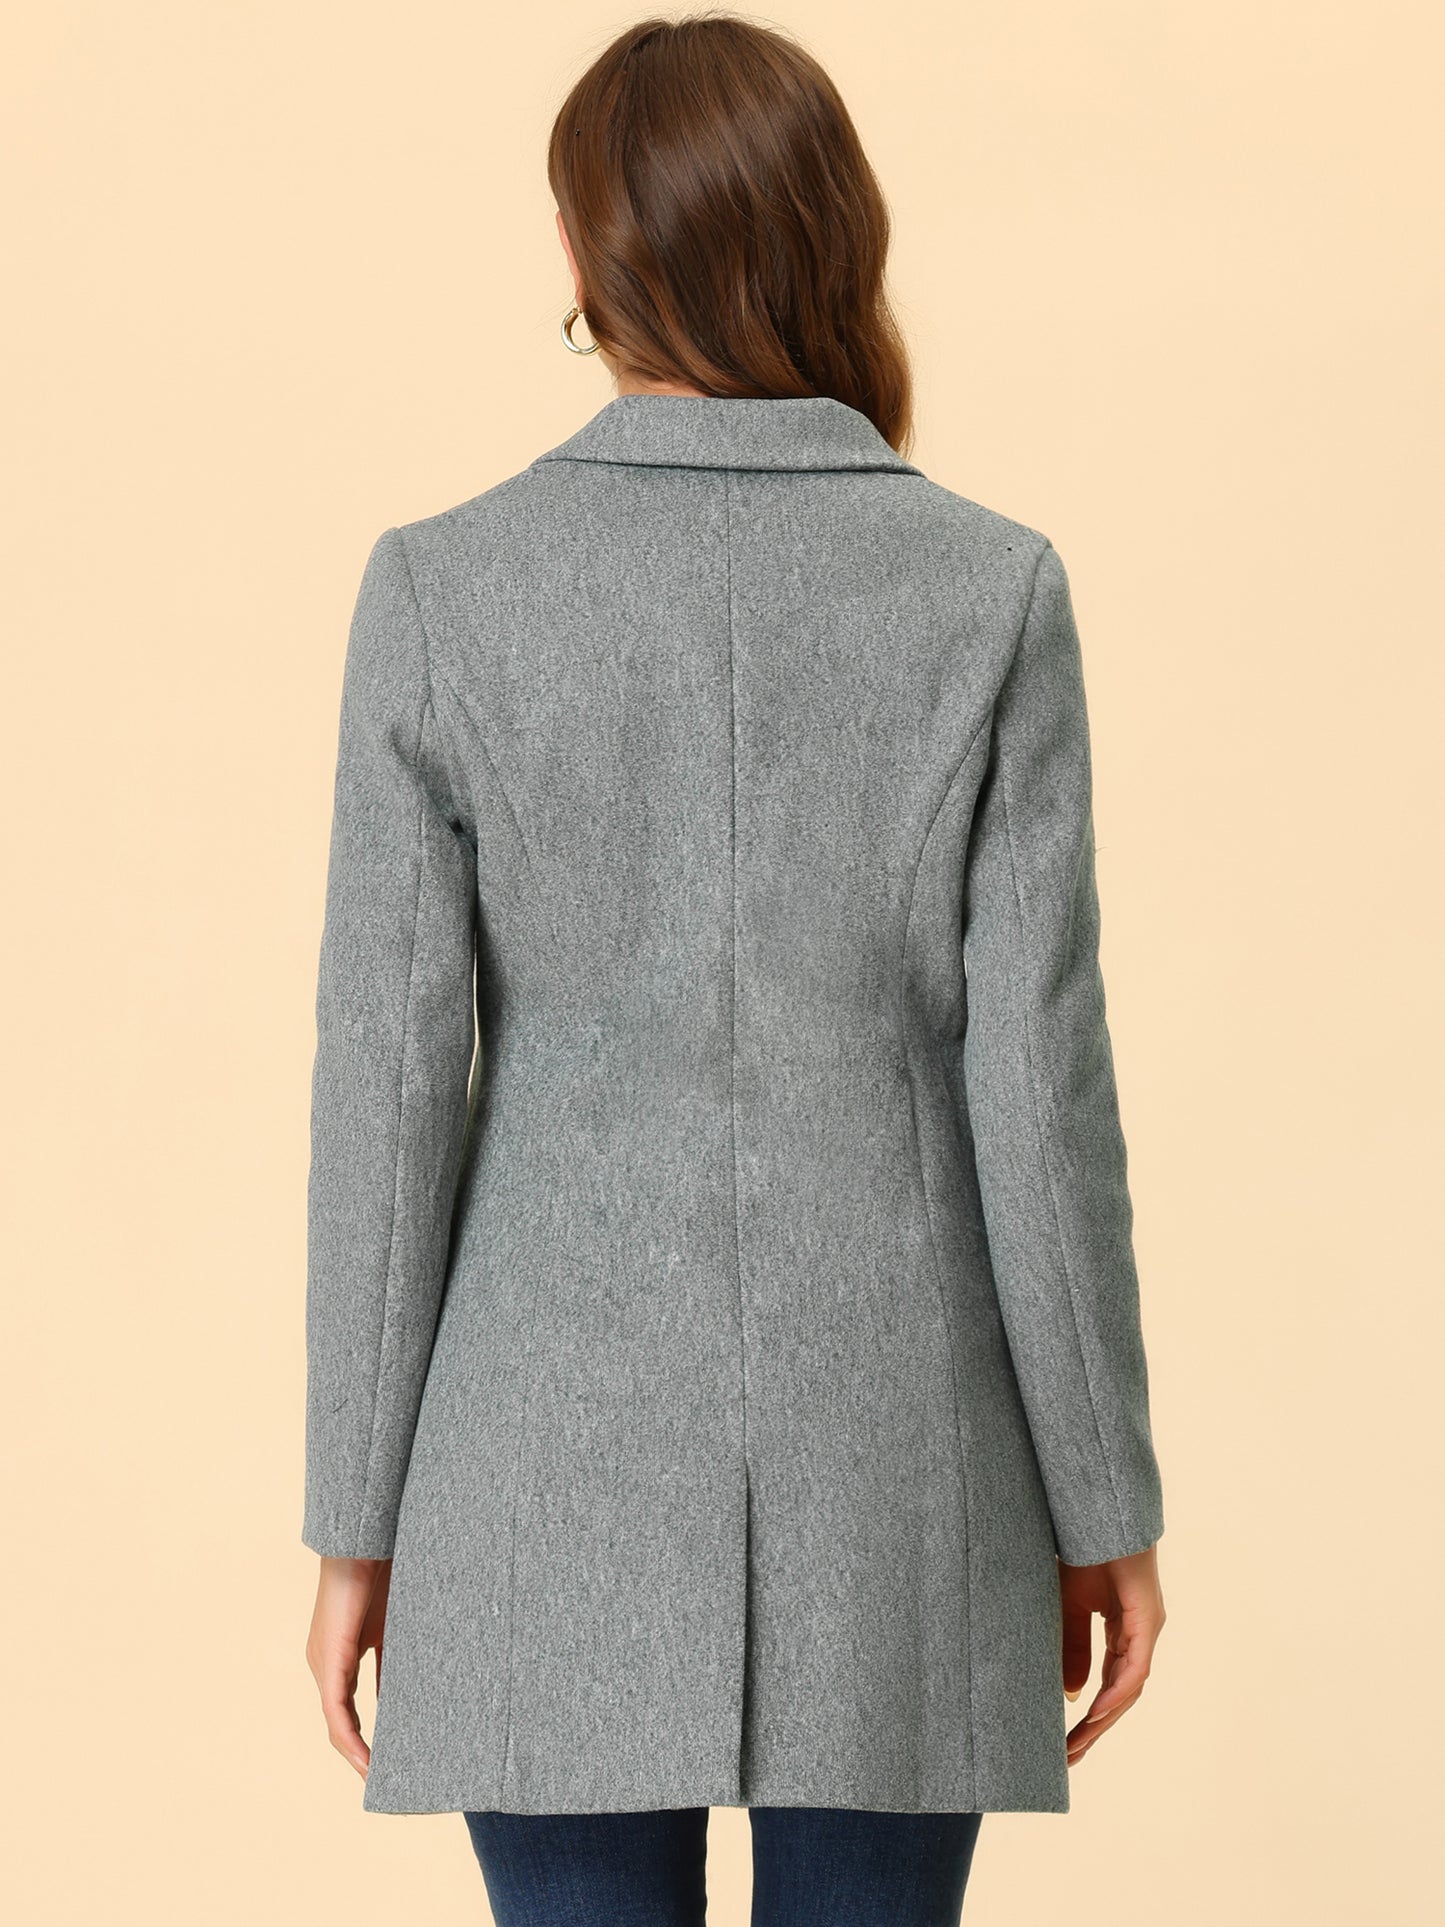 Allegra K Notched Lapel Single Breasted Outwear Winter Coat Light Grey